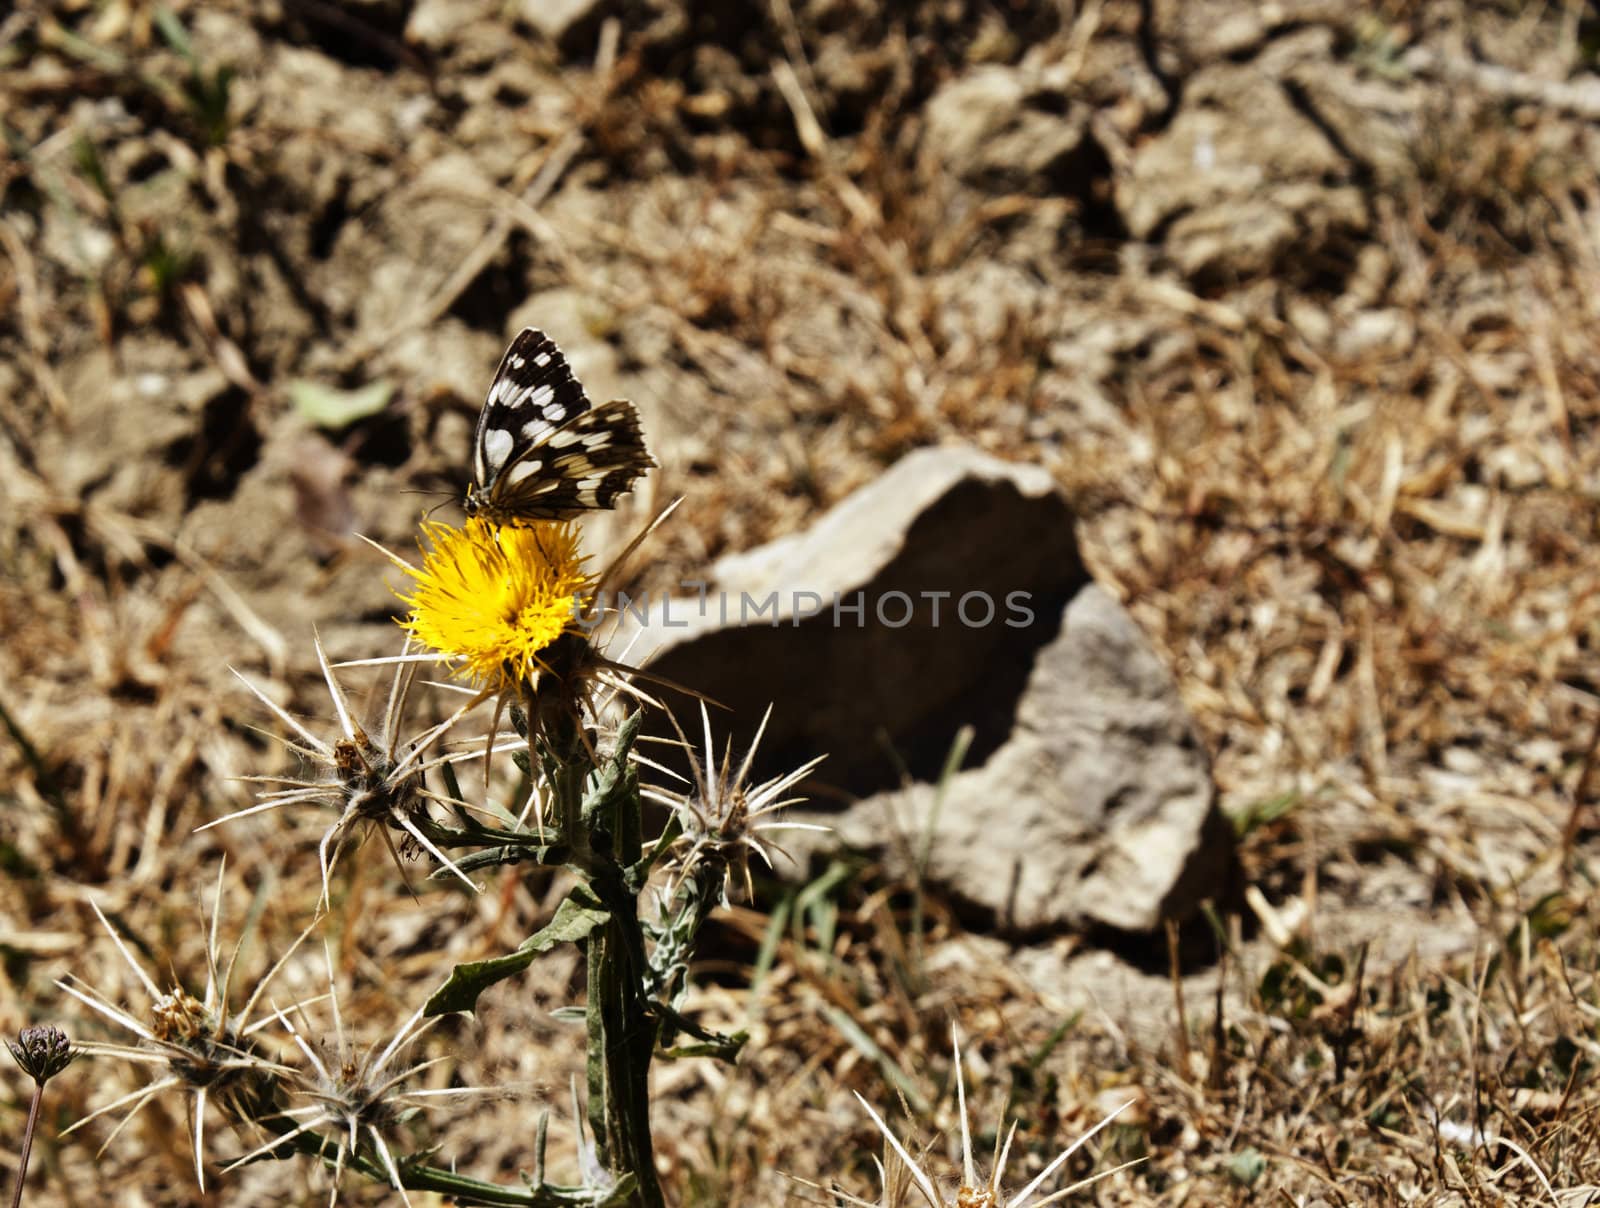 Butterfly on a flower by gandolfocannatella